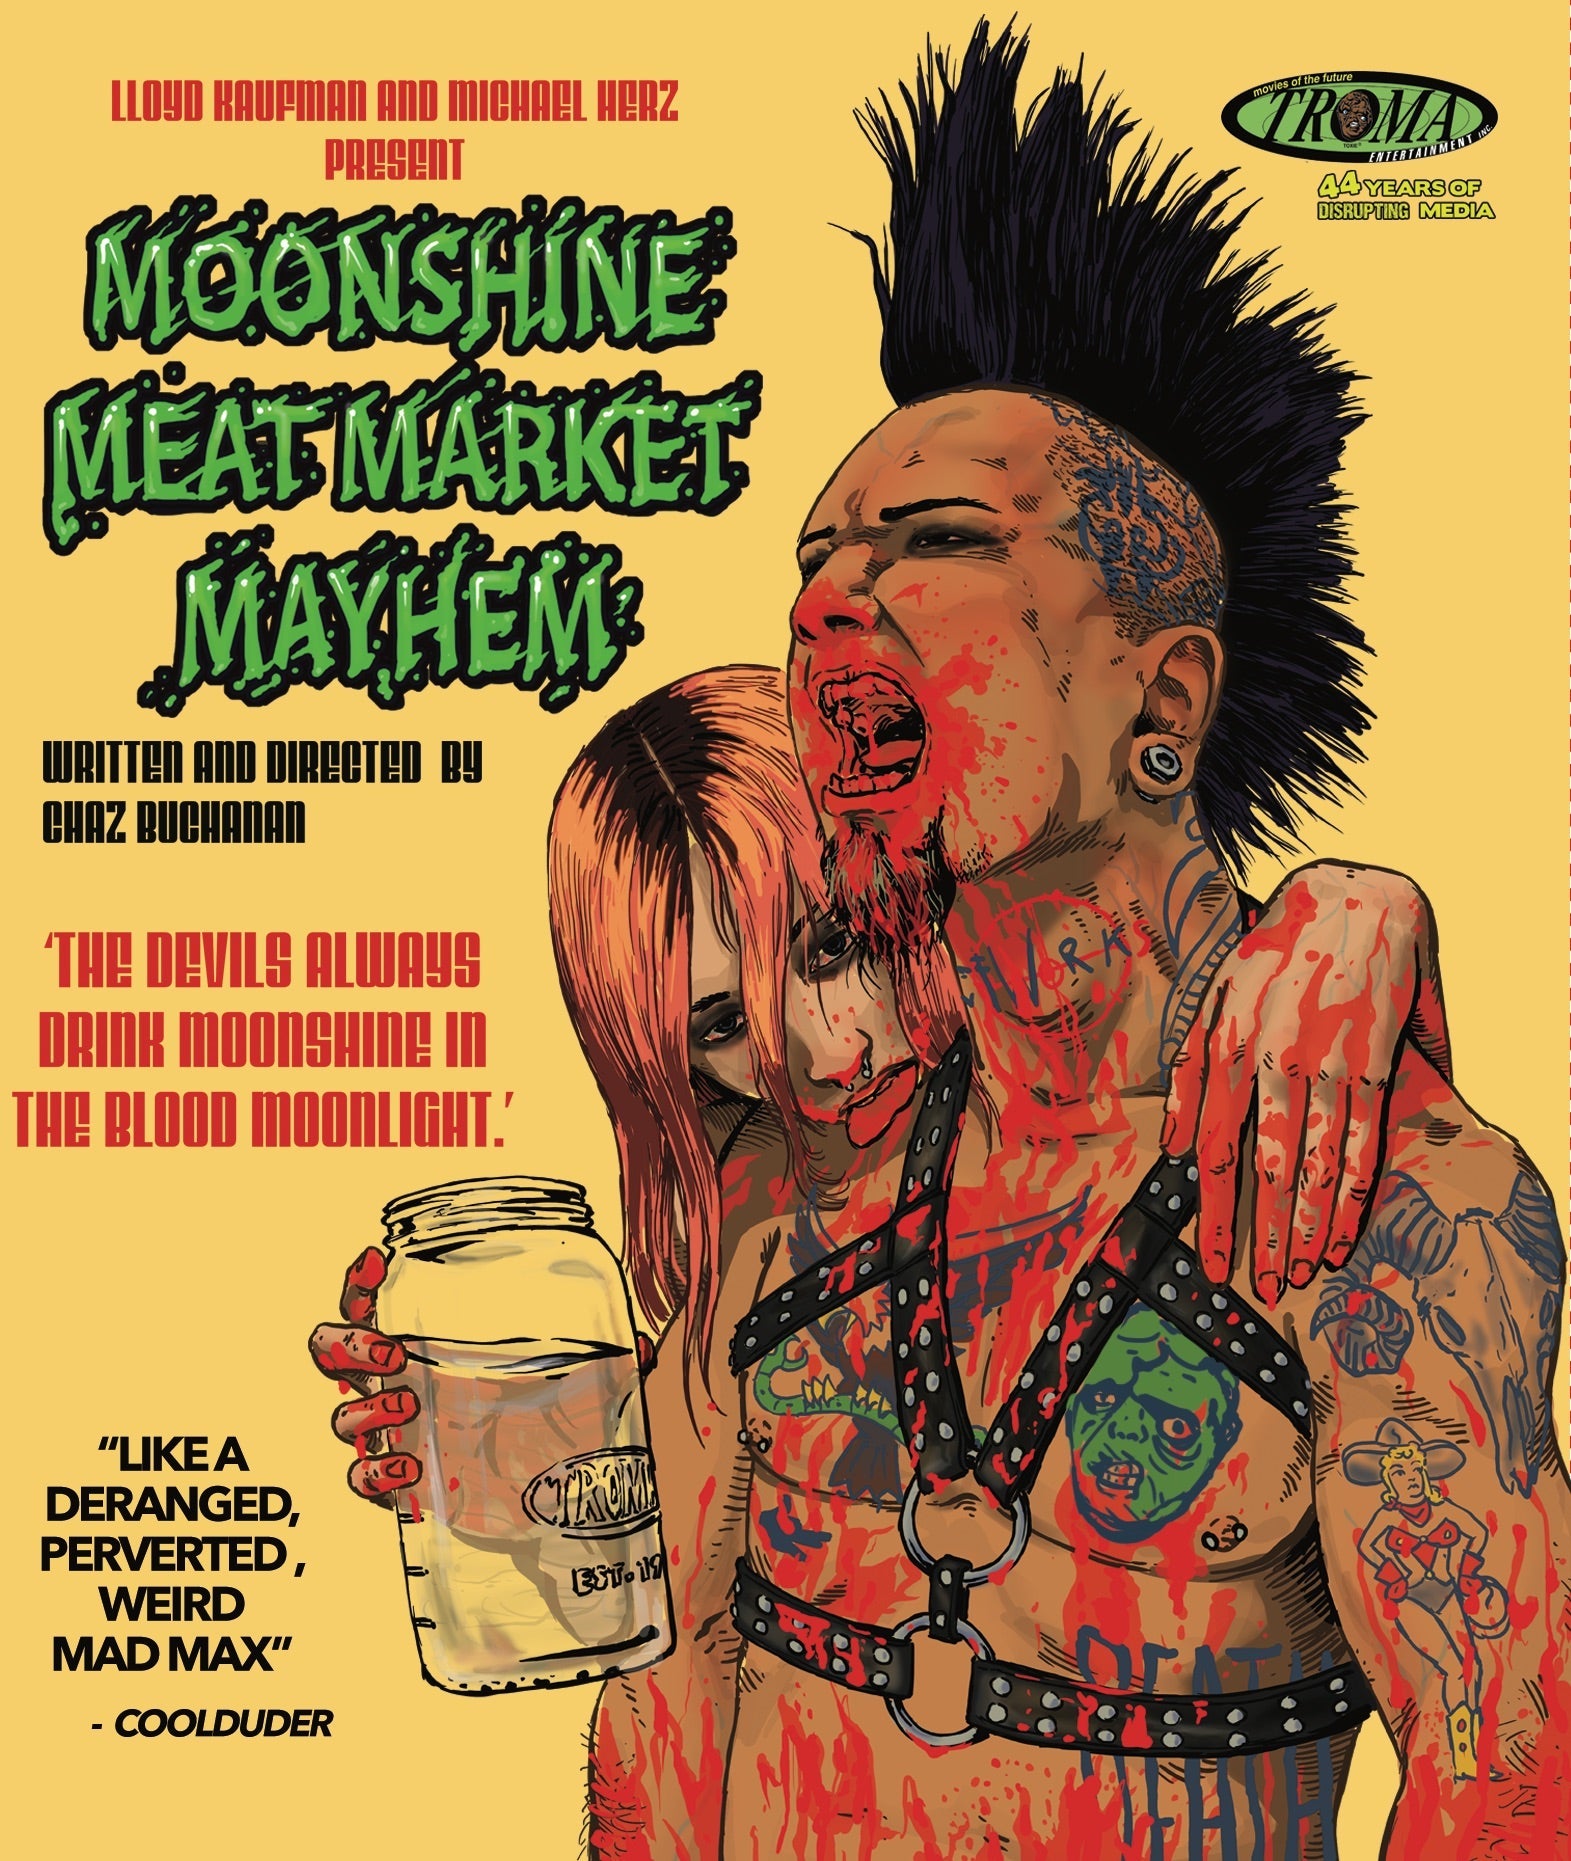 Moonshine Meat Market Mayhem Blu-Ray Blu-Ray